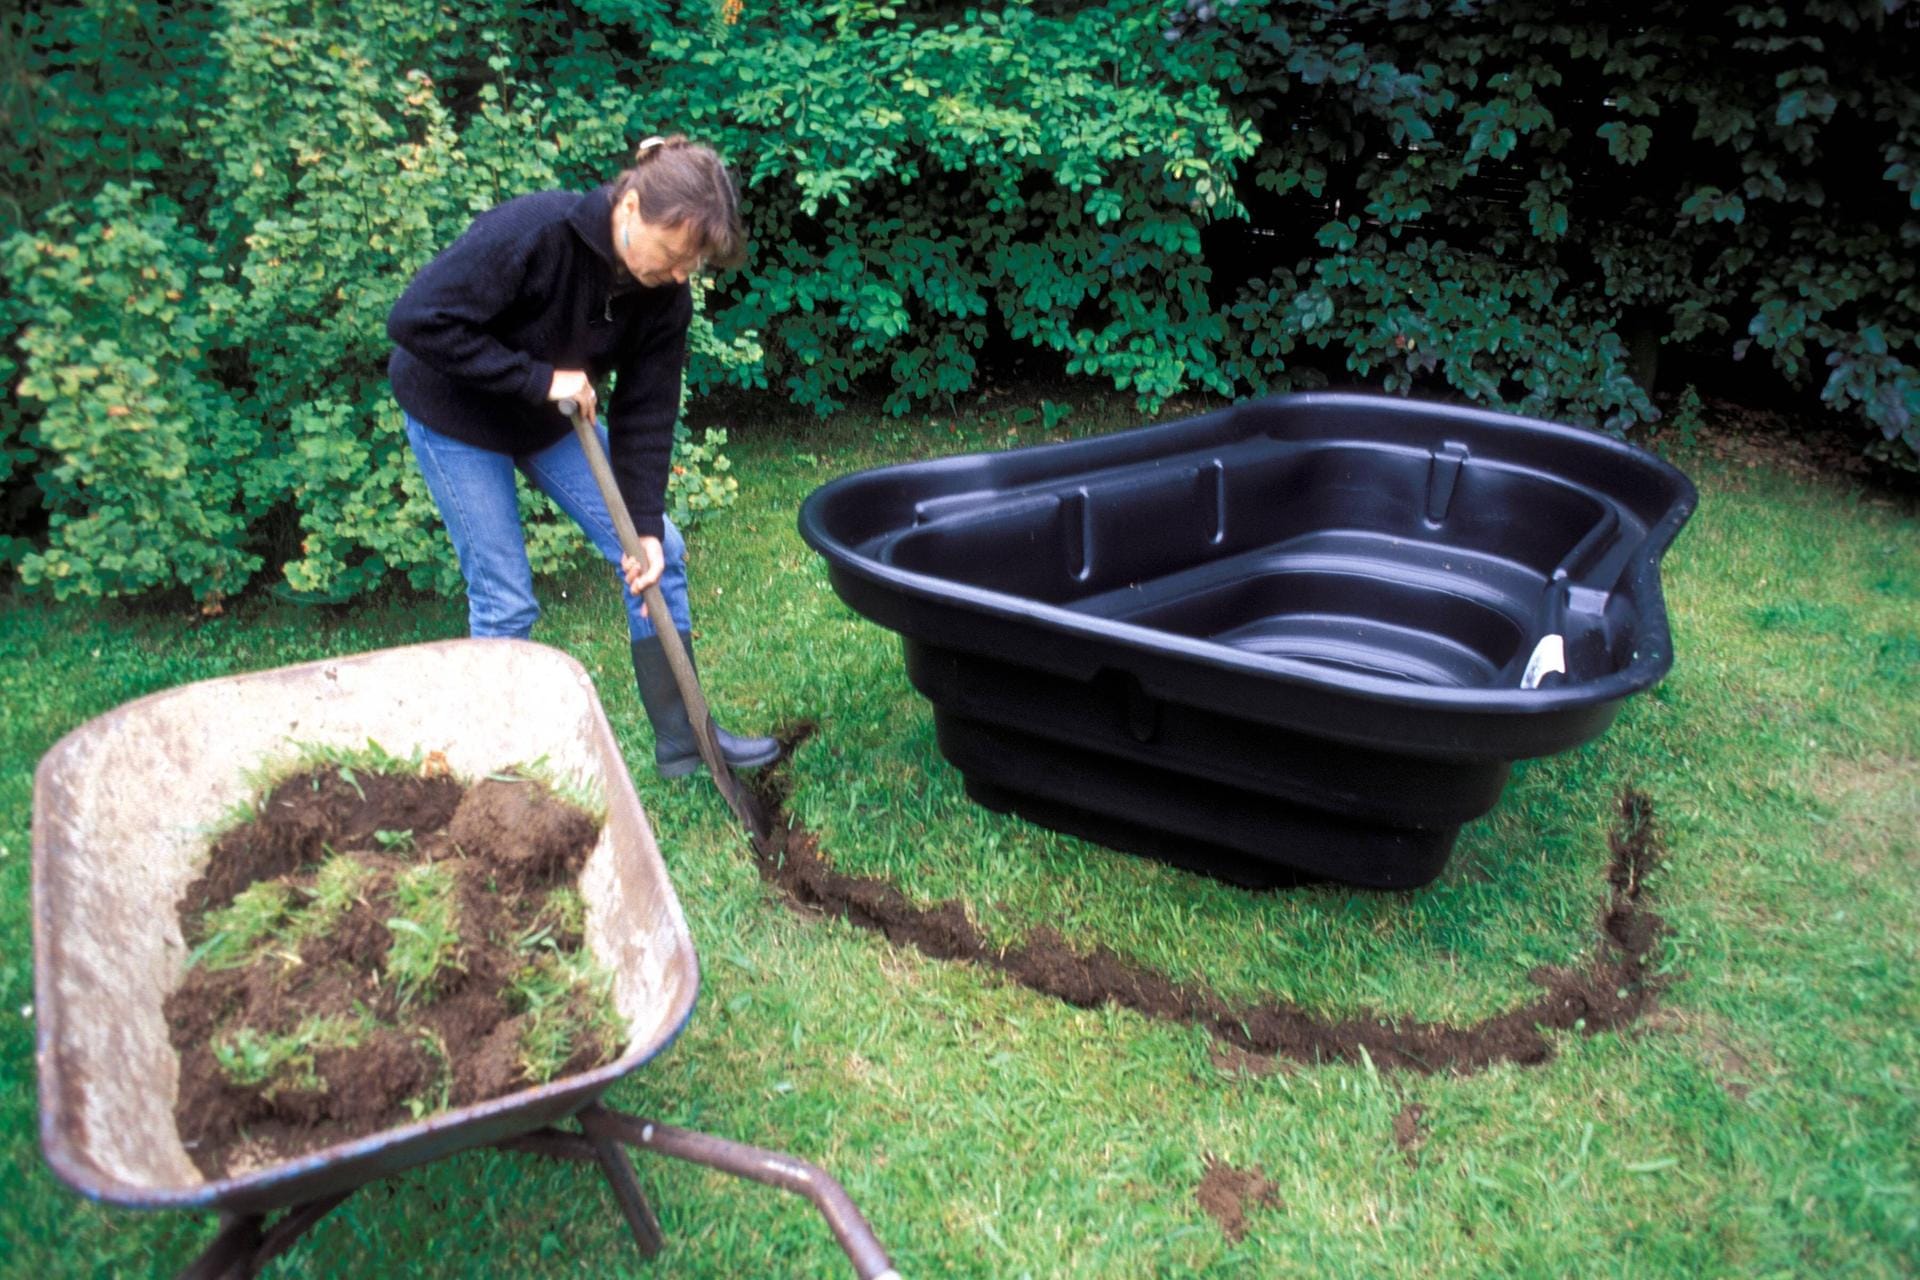 Anlegen eines Fertig-Gartenteiches: Zuerst wird die Grube für das Teichbecken ausgehoben.